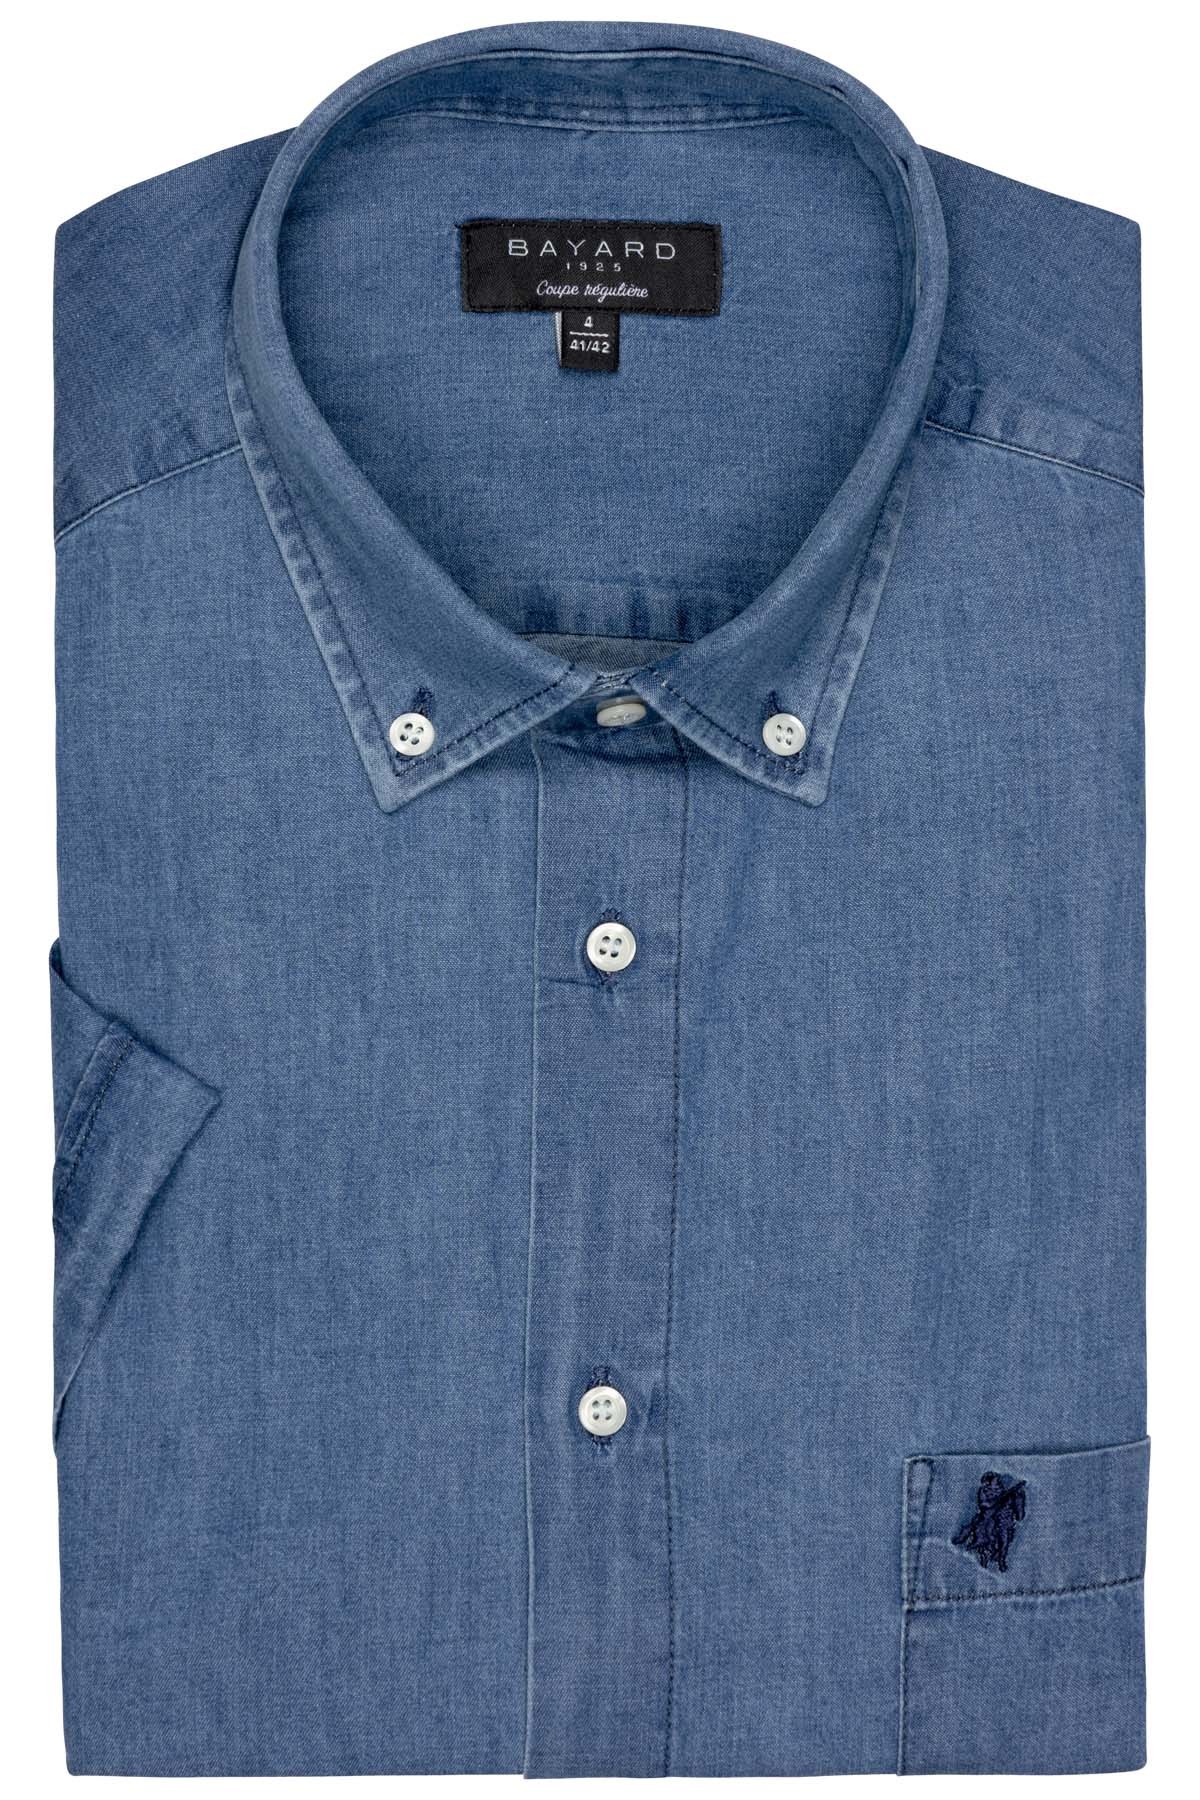 Chemise manches courtes Gant bleu marine pour homme - Toujours au